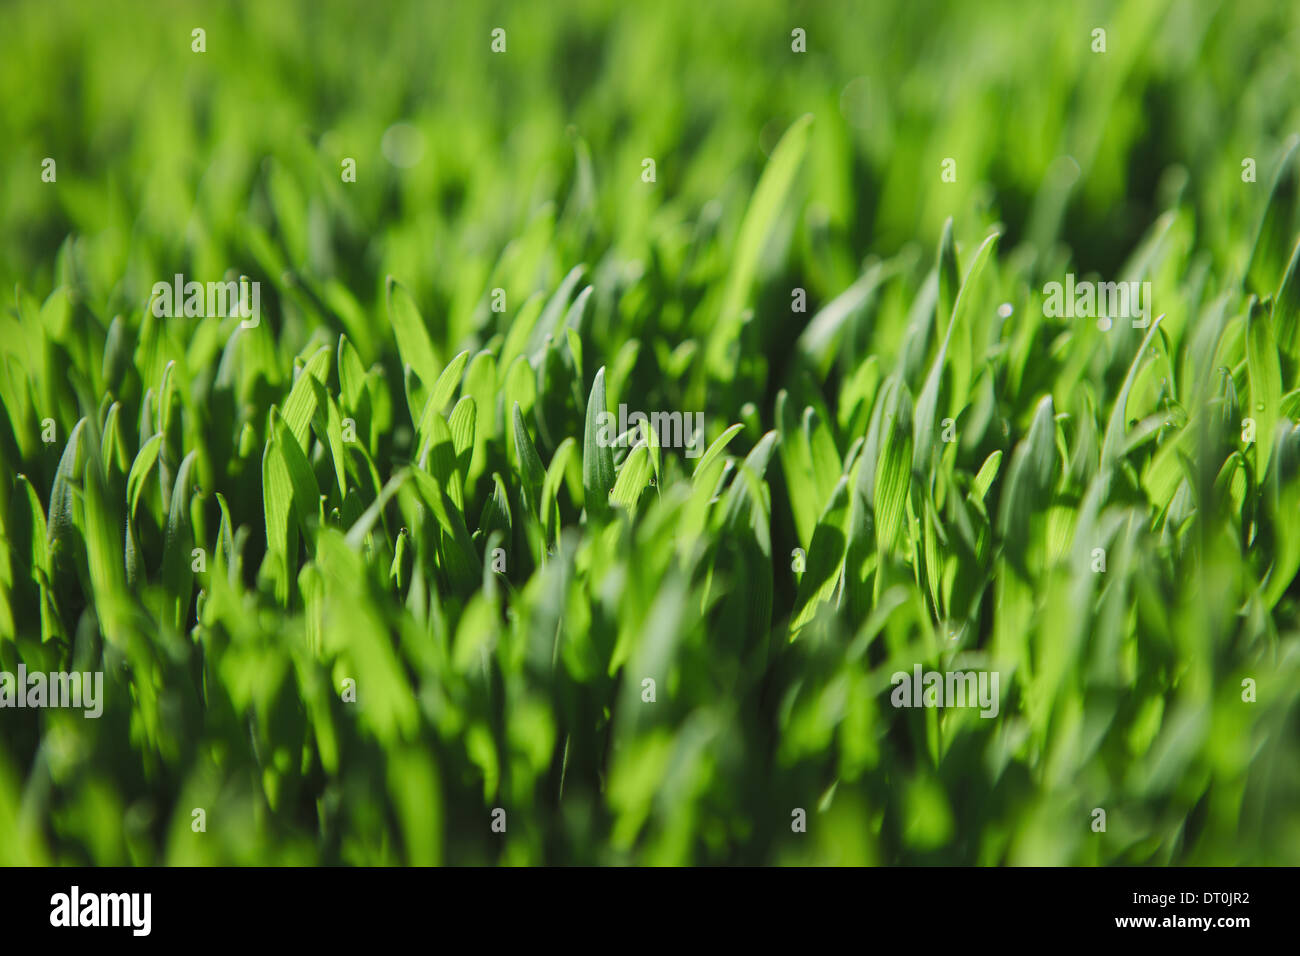 Washington state USA Close up of lush green grass Stock Photo